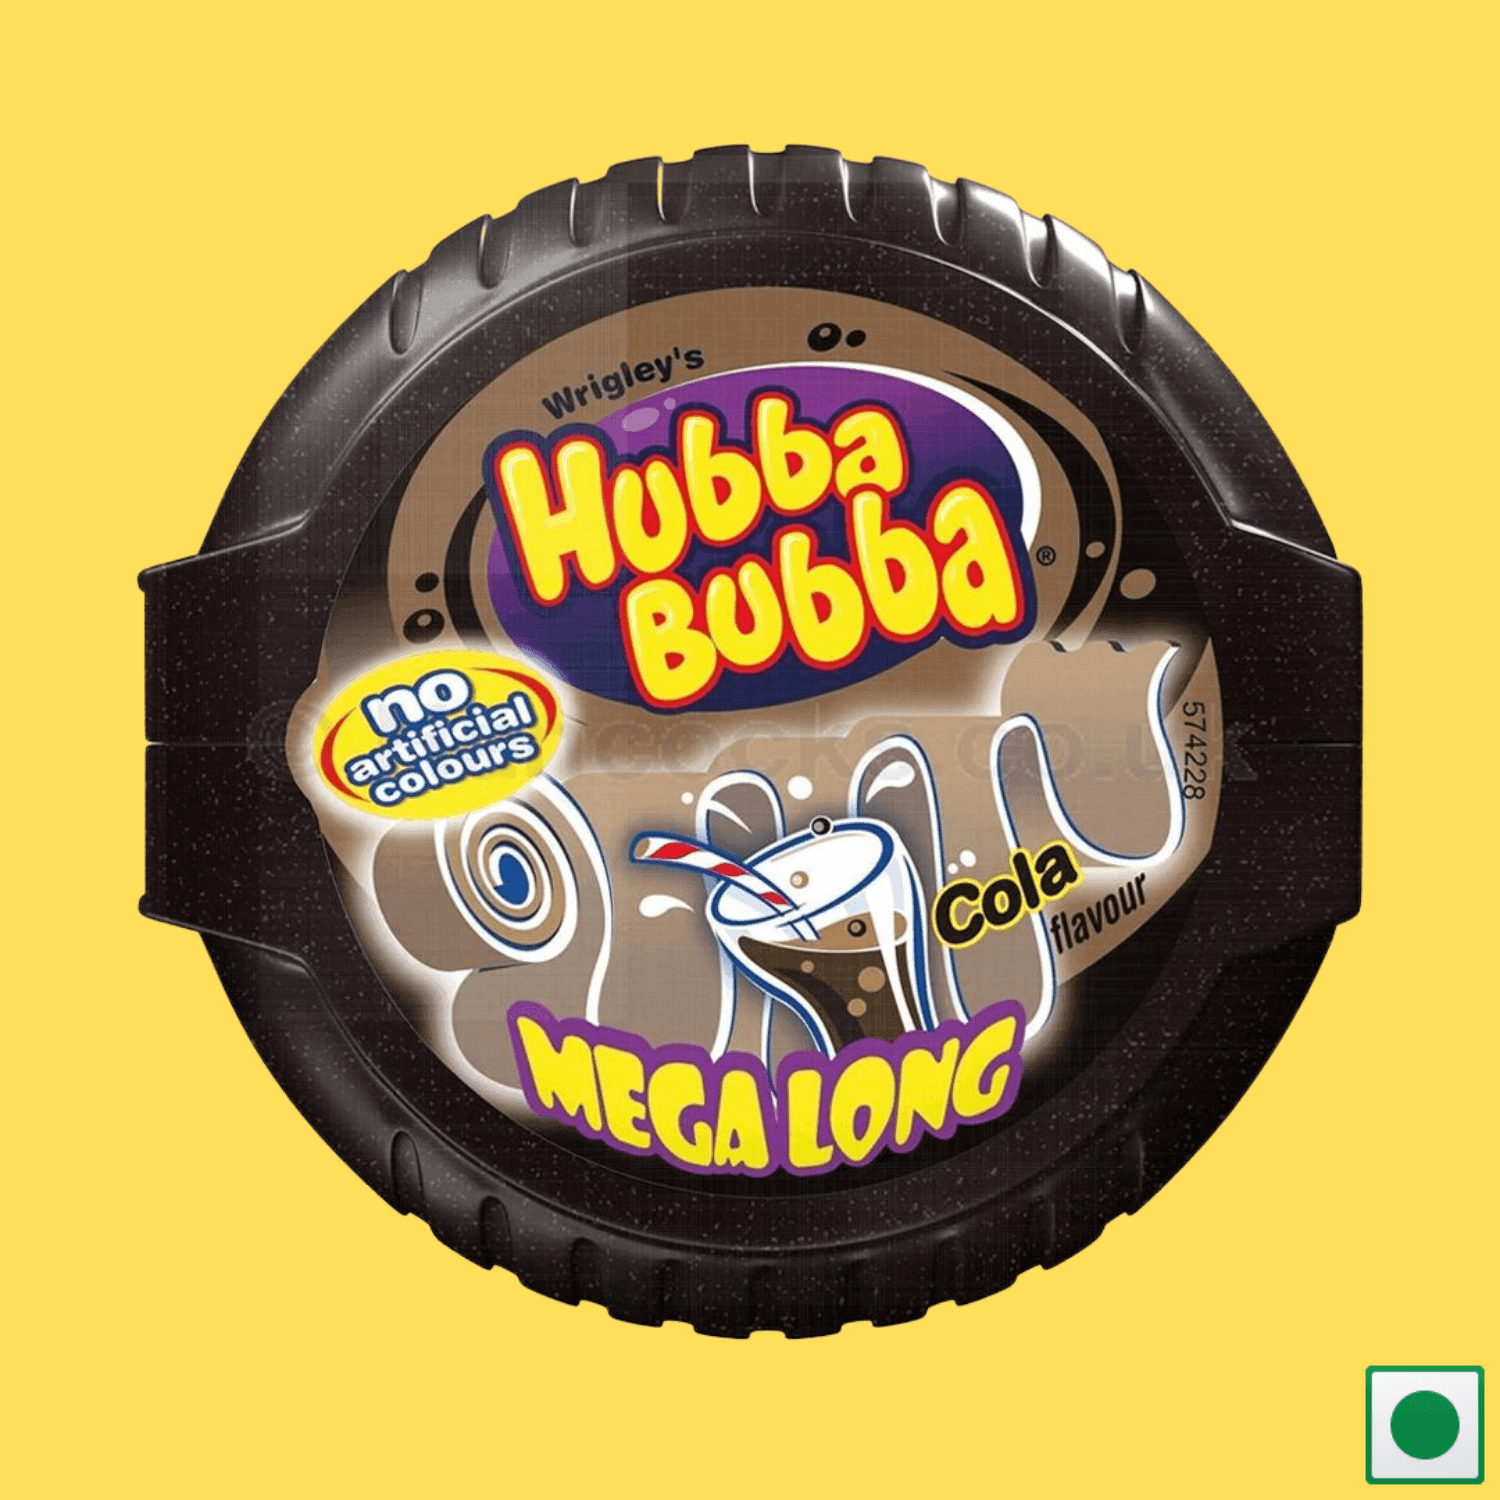 Hubba Bubba Cola Bubble Tape, 56g (Imported) - Super 7 Mart